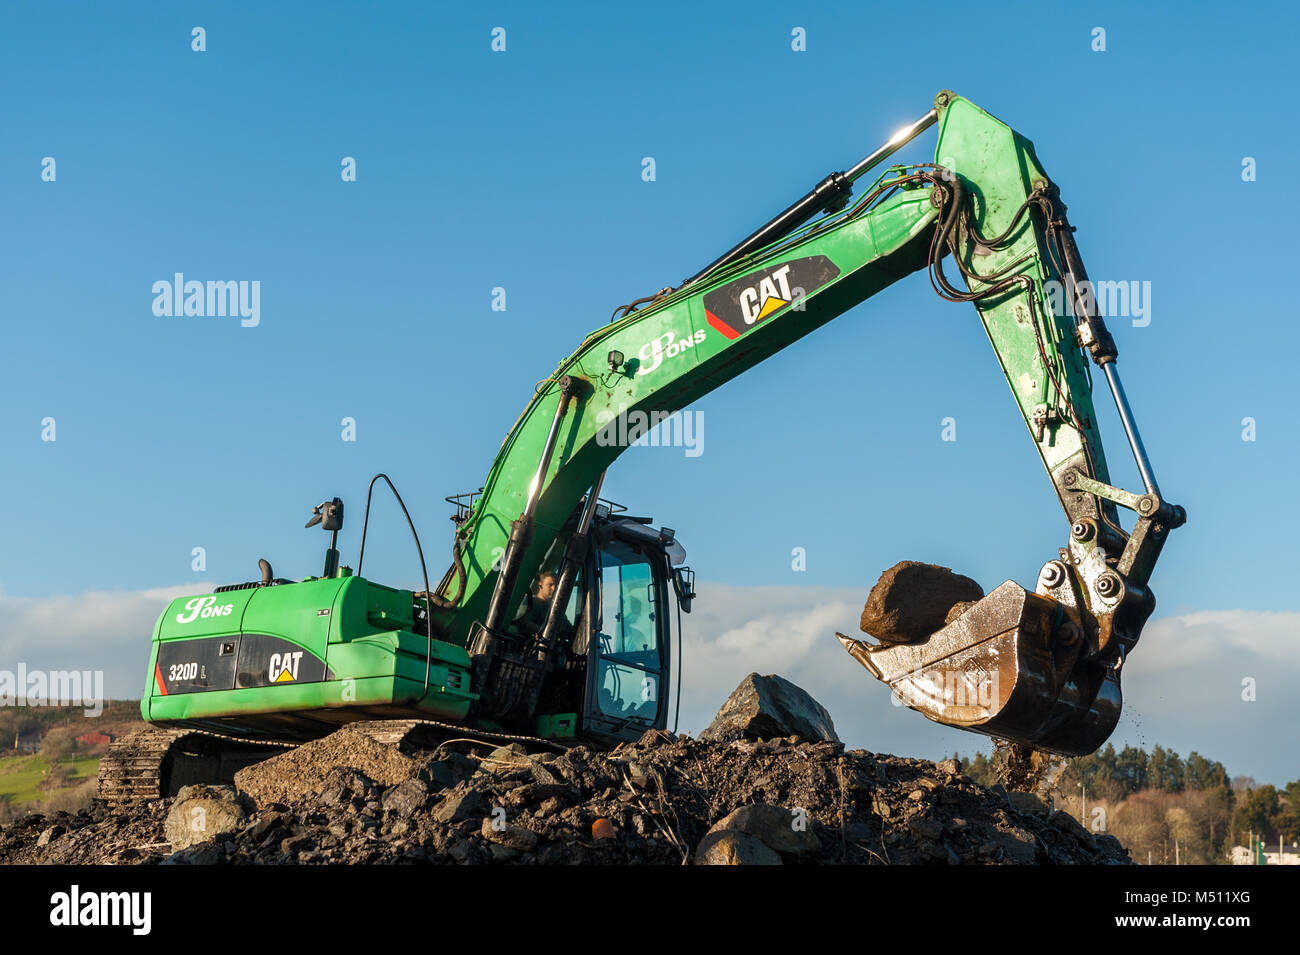 Excavatrice Caterpillar CAT 320D au travail déménagement terre/pierres avec ciel bleu et copie espace dans Skibbereen, comté de Cork, Irlande. Banque D'Images